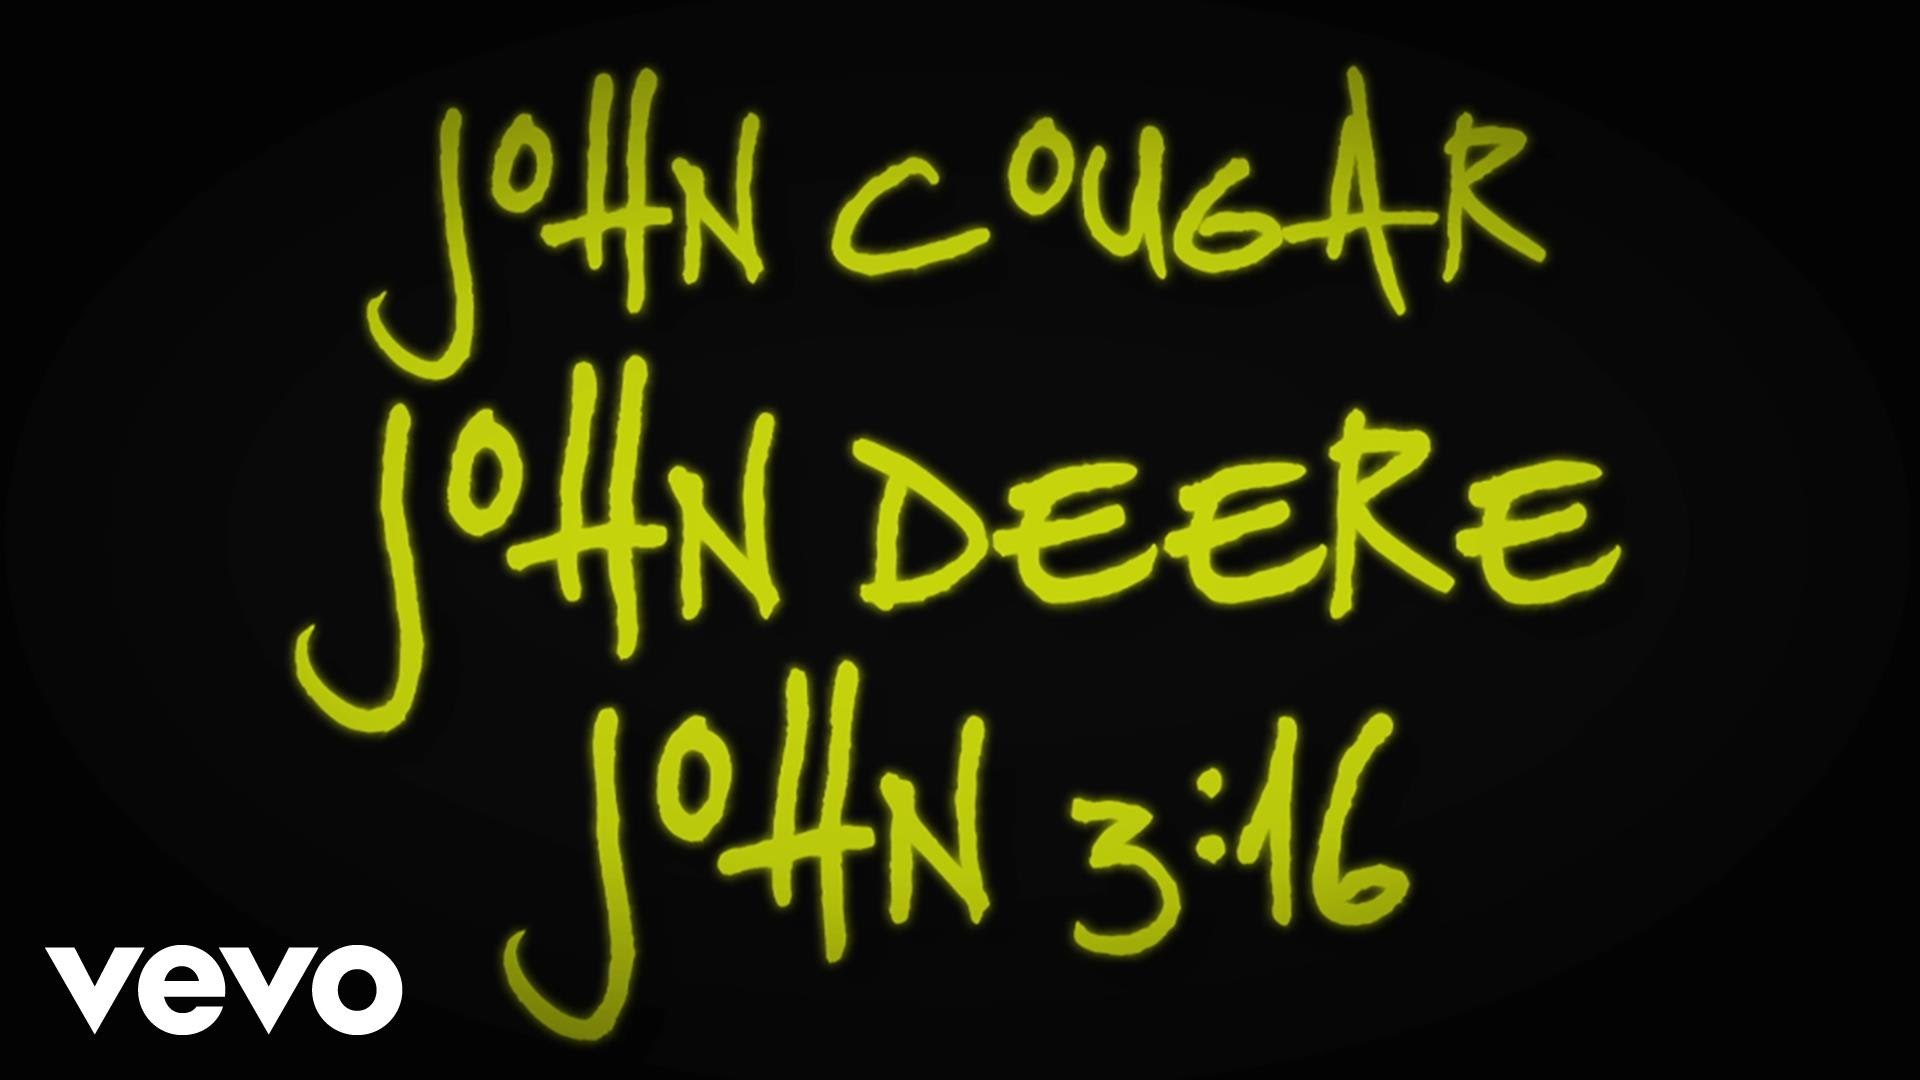 1920x1080 Keith Urban - John Cougar, John Deere, John 3:16 (Lyric Video) - YouTube